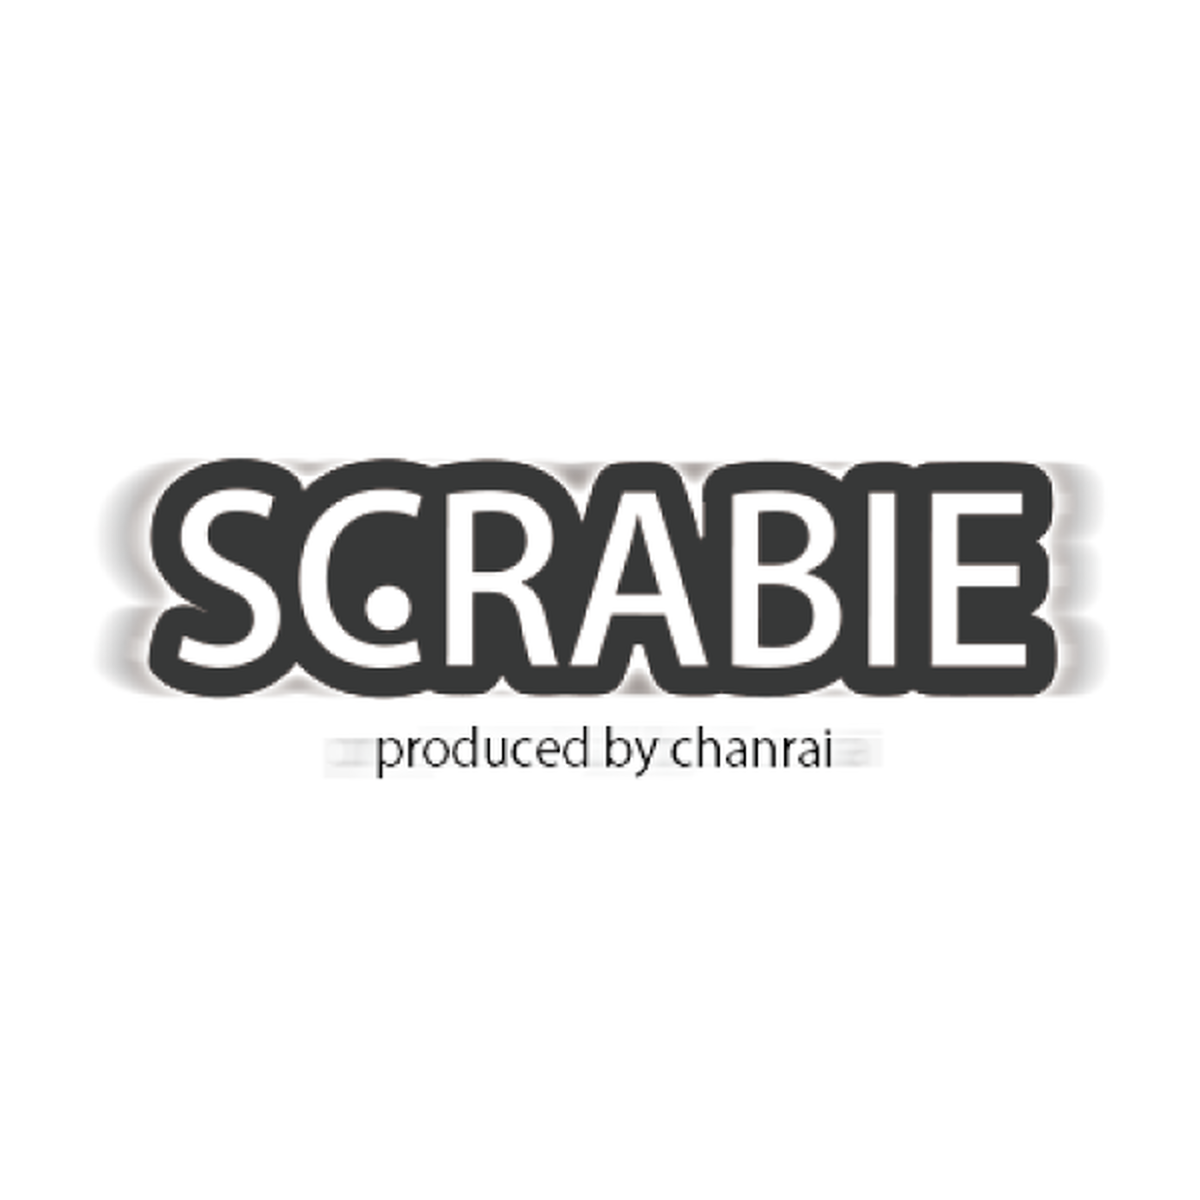 Scrabie